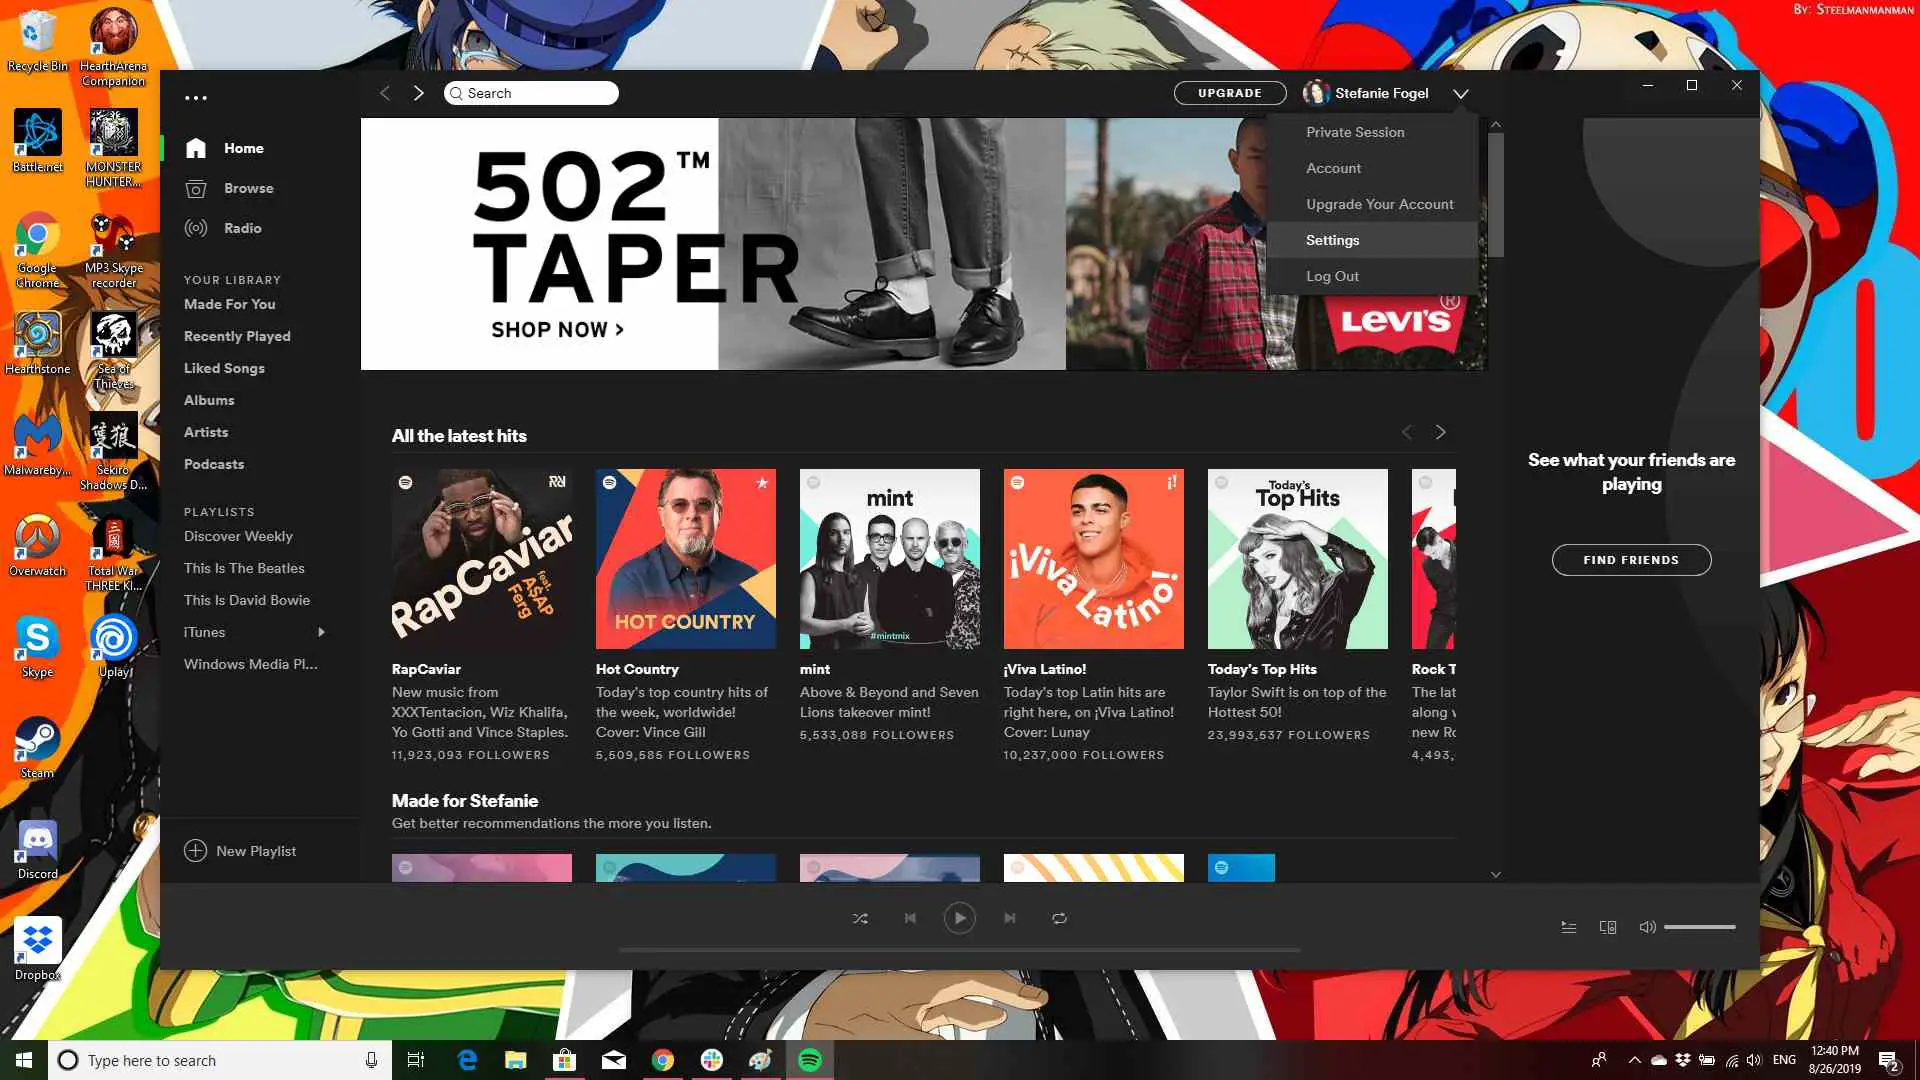 Captura de tela do aplicativo Spotify para desktop com as configurações destacadas